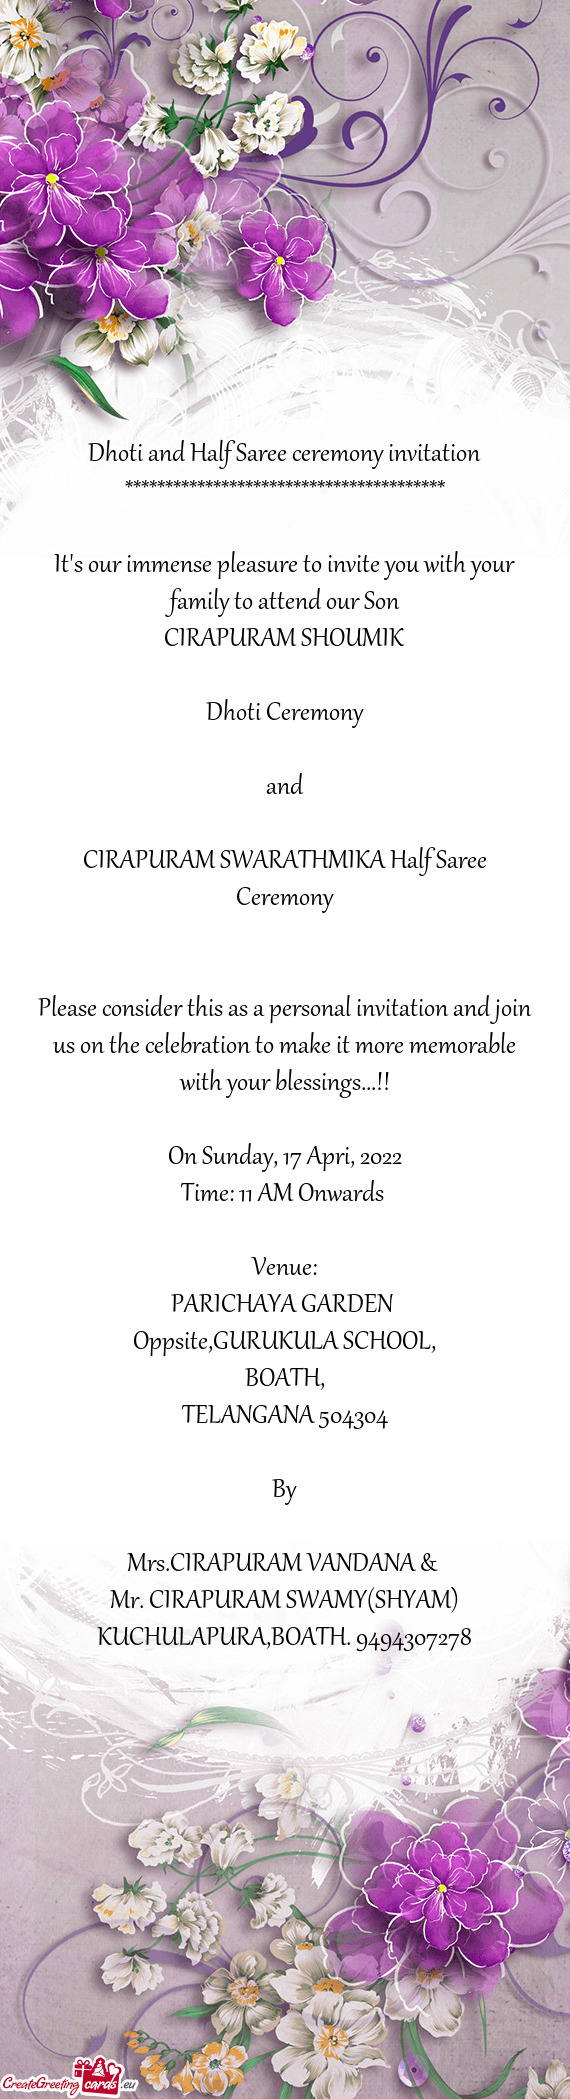 CIRAPURAM SWARATHMIKA Half Saree Ceremony